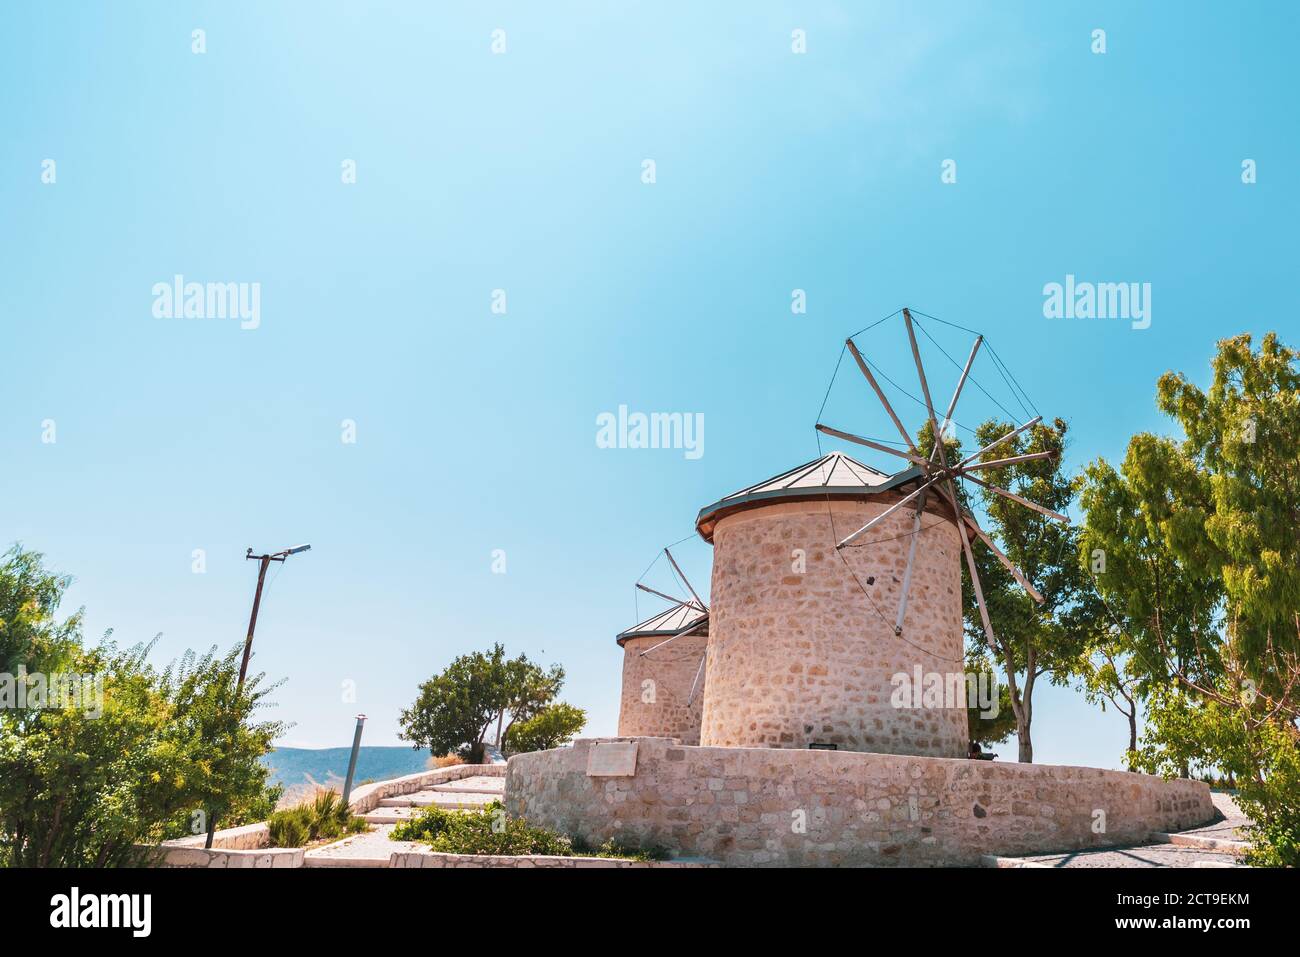 Un antiguo molino de viento clásico en una ciudad tradicional, rural y hermosa. . Foto de alta calidad Foto de stock